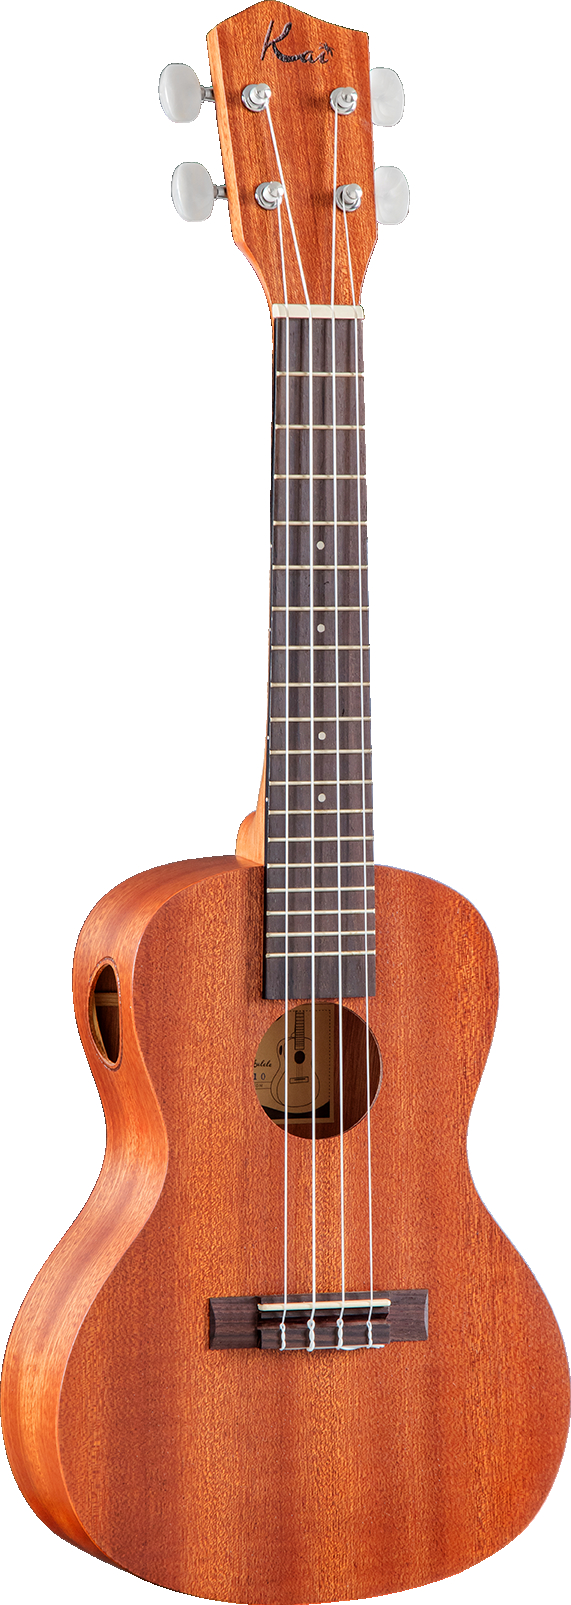 Kai KCI-10 ukulele